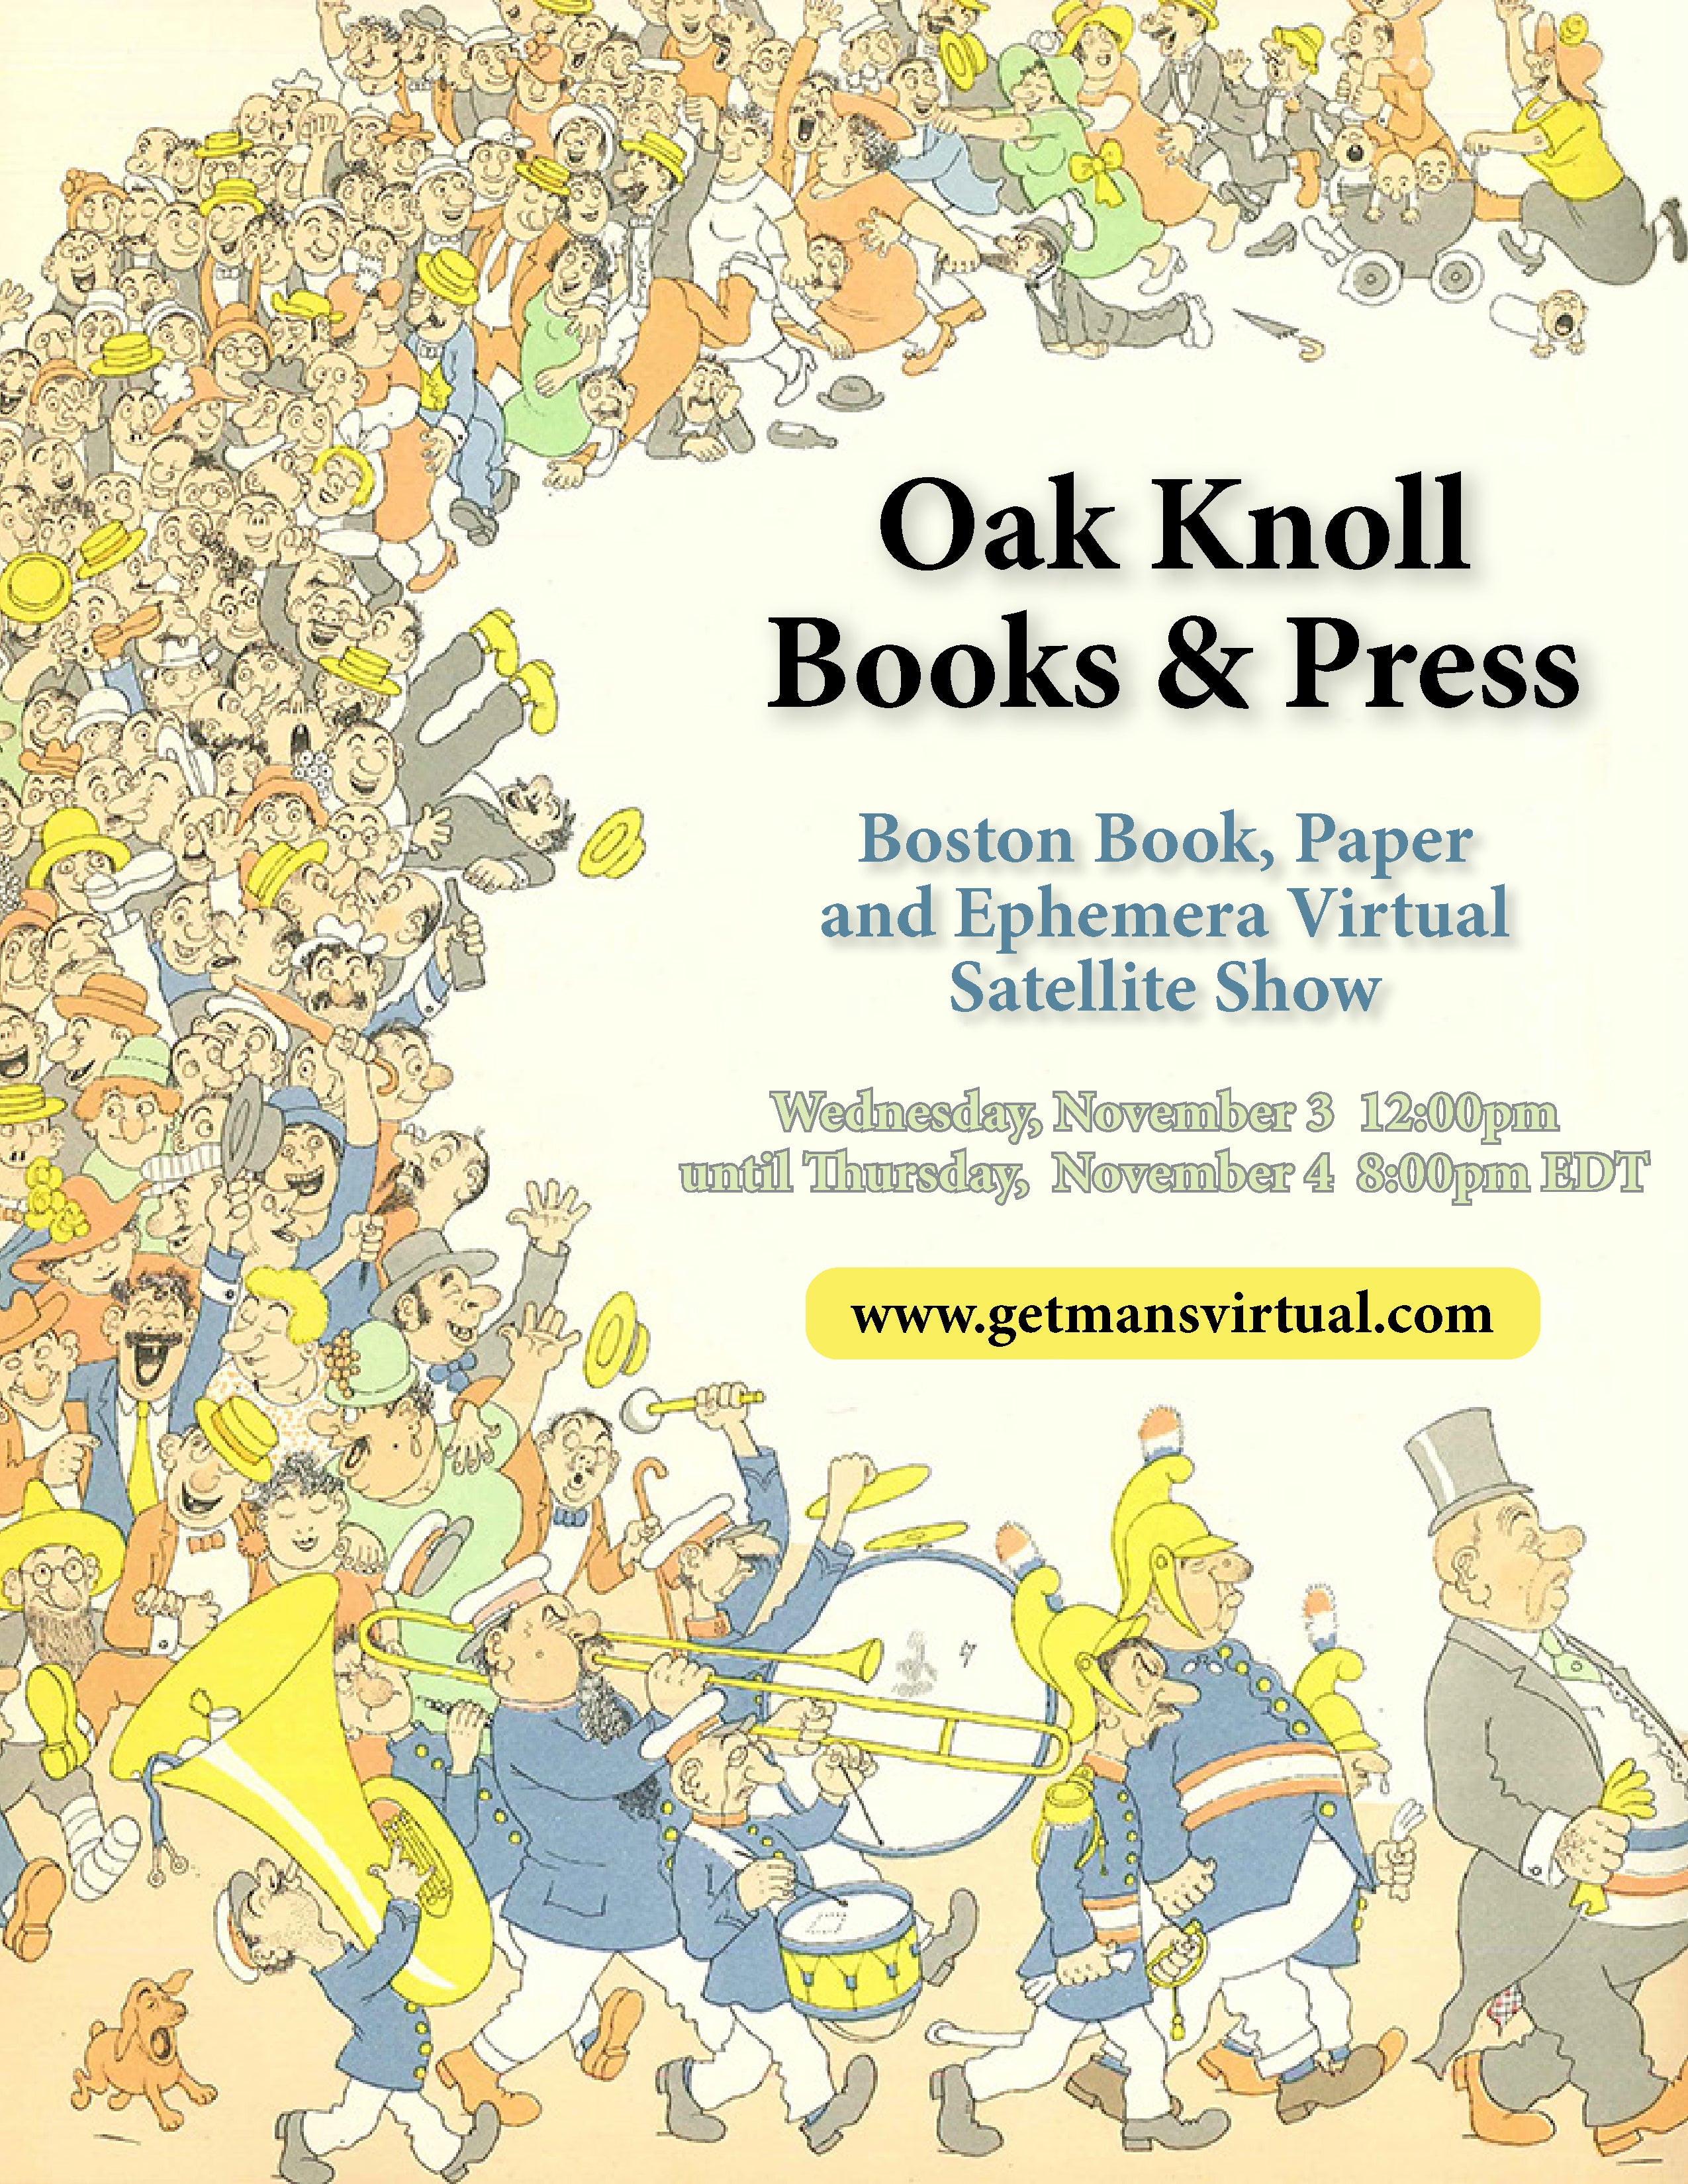 Boston Book Print & Ephemera Show 2021 - Getman's Virtual